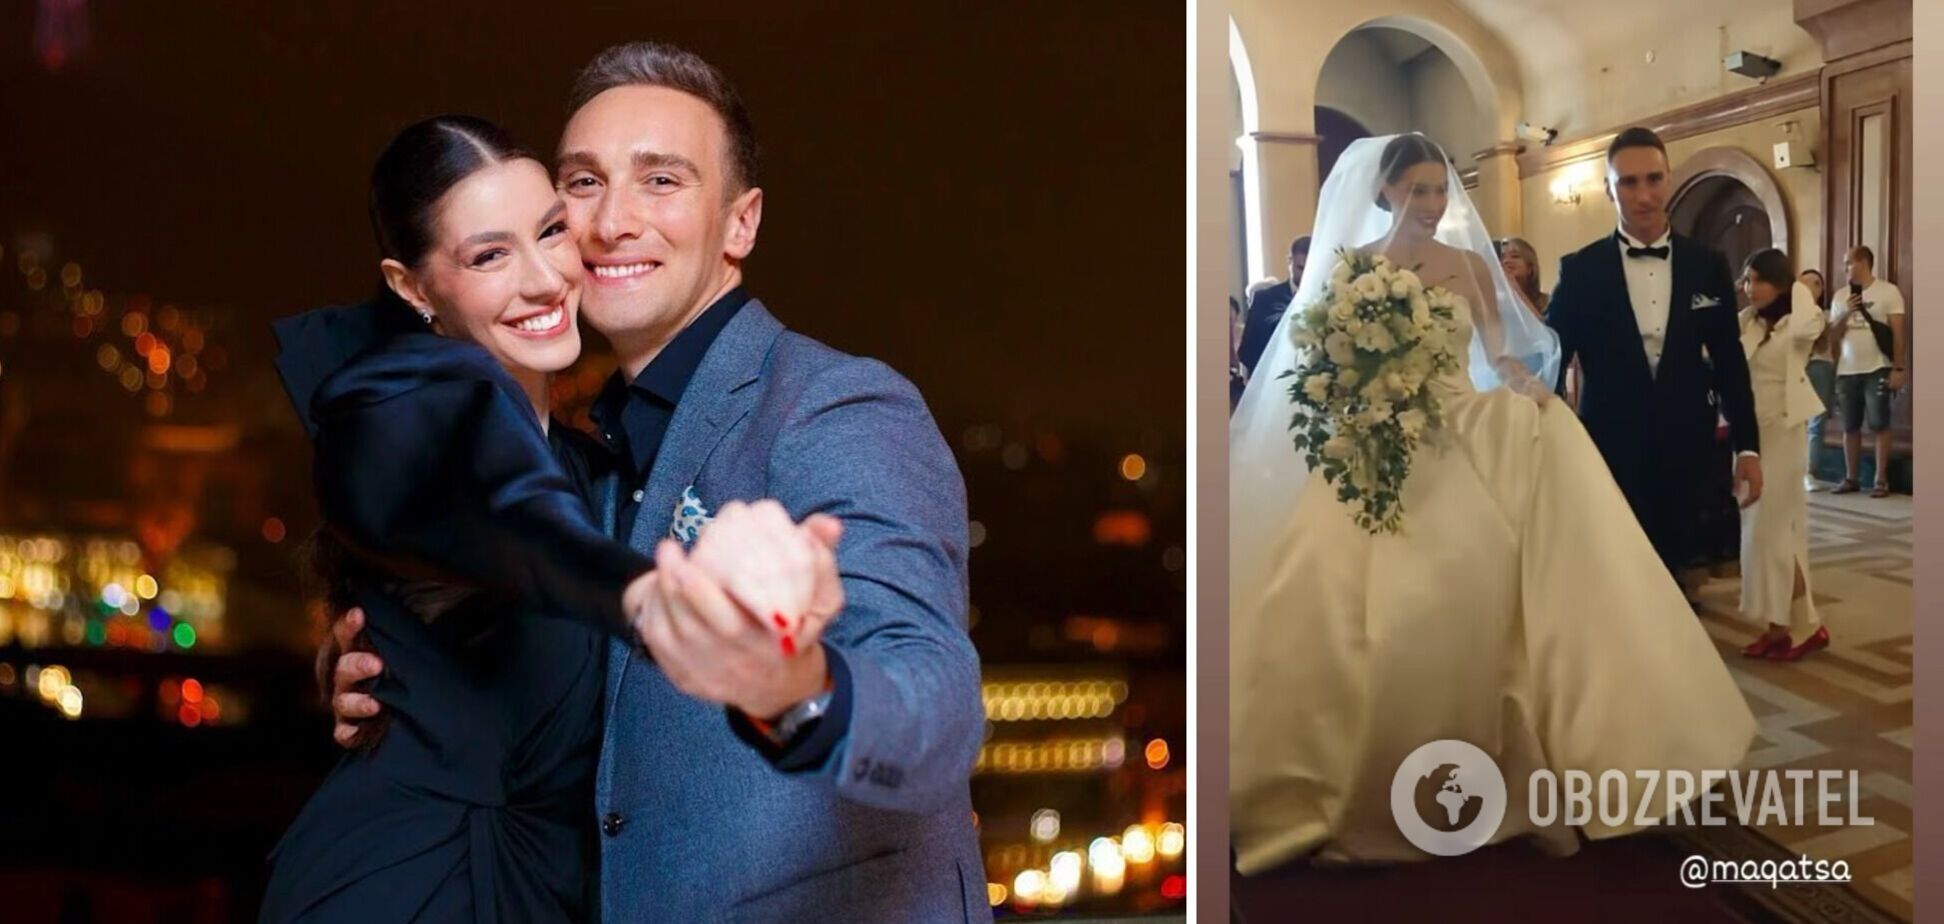 Иракли Макацария сыграл свадьбу: экс-'Холостяк' расплакался, увидев невесту. Фото